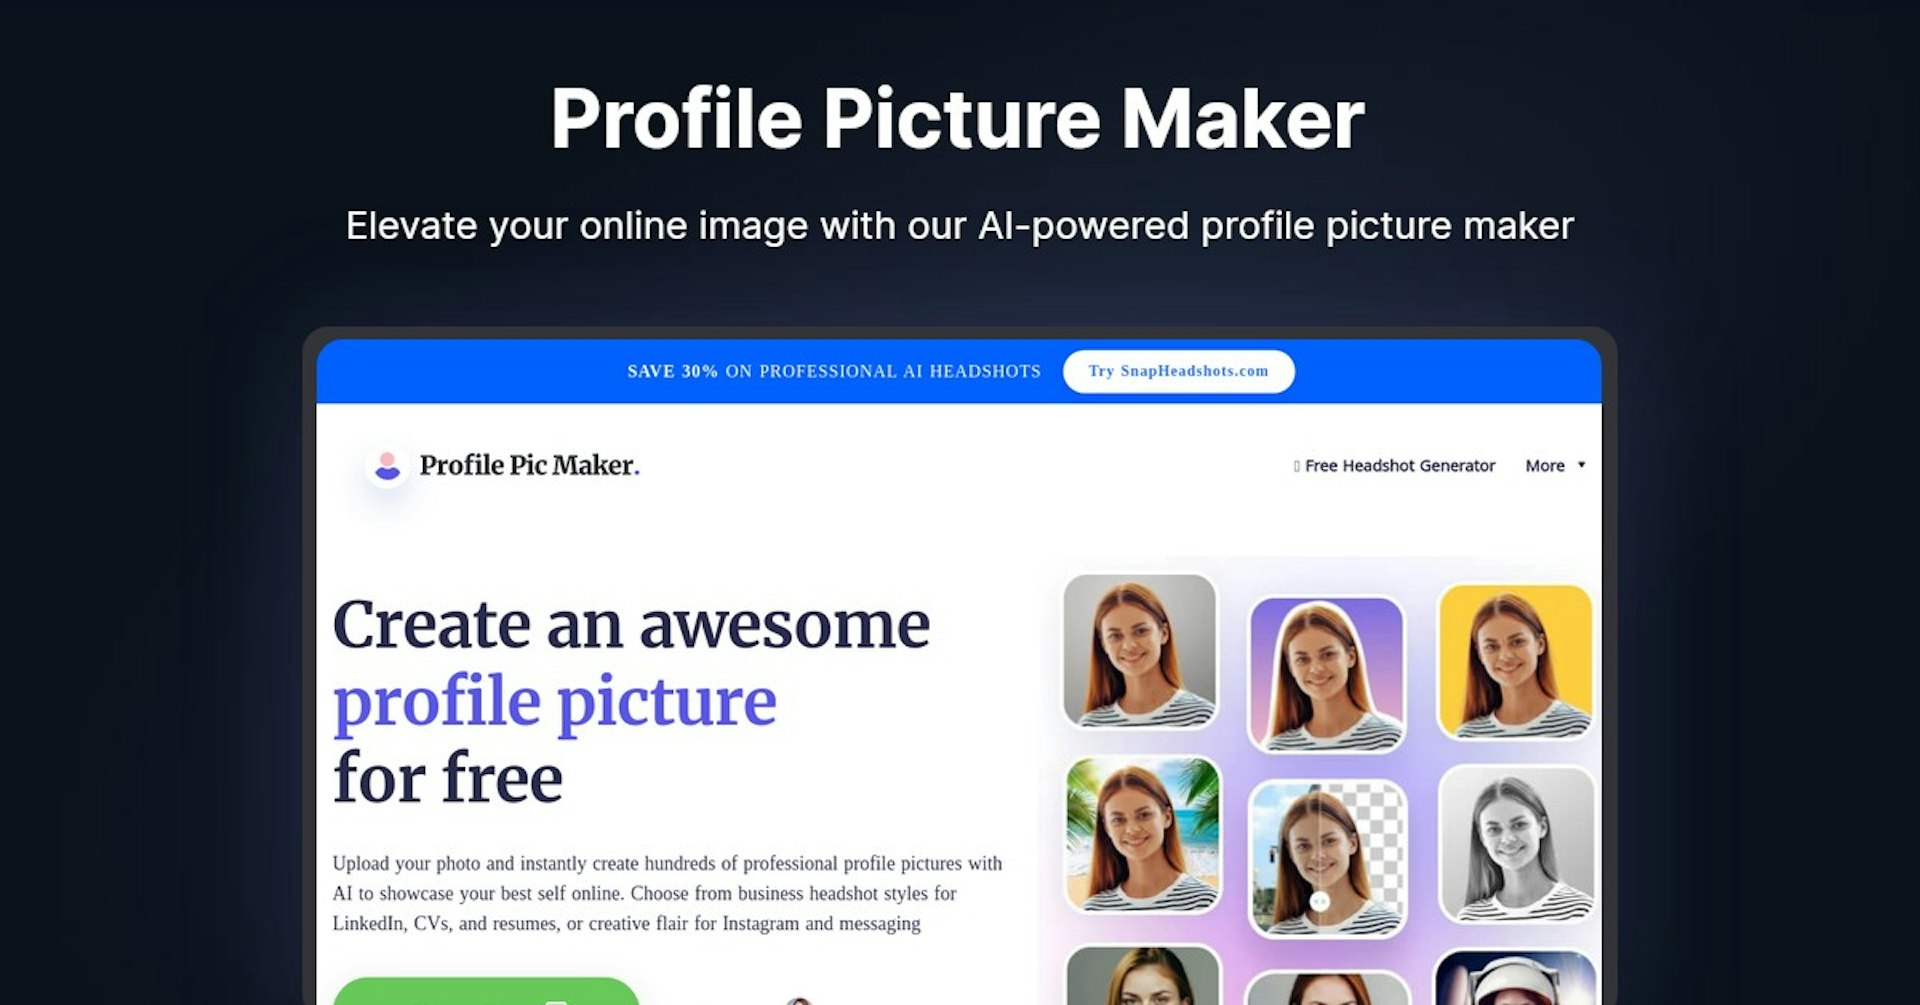 Profile Picture Maker